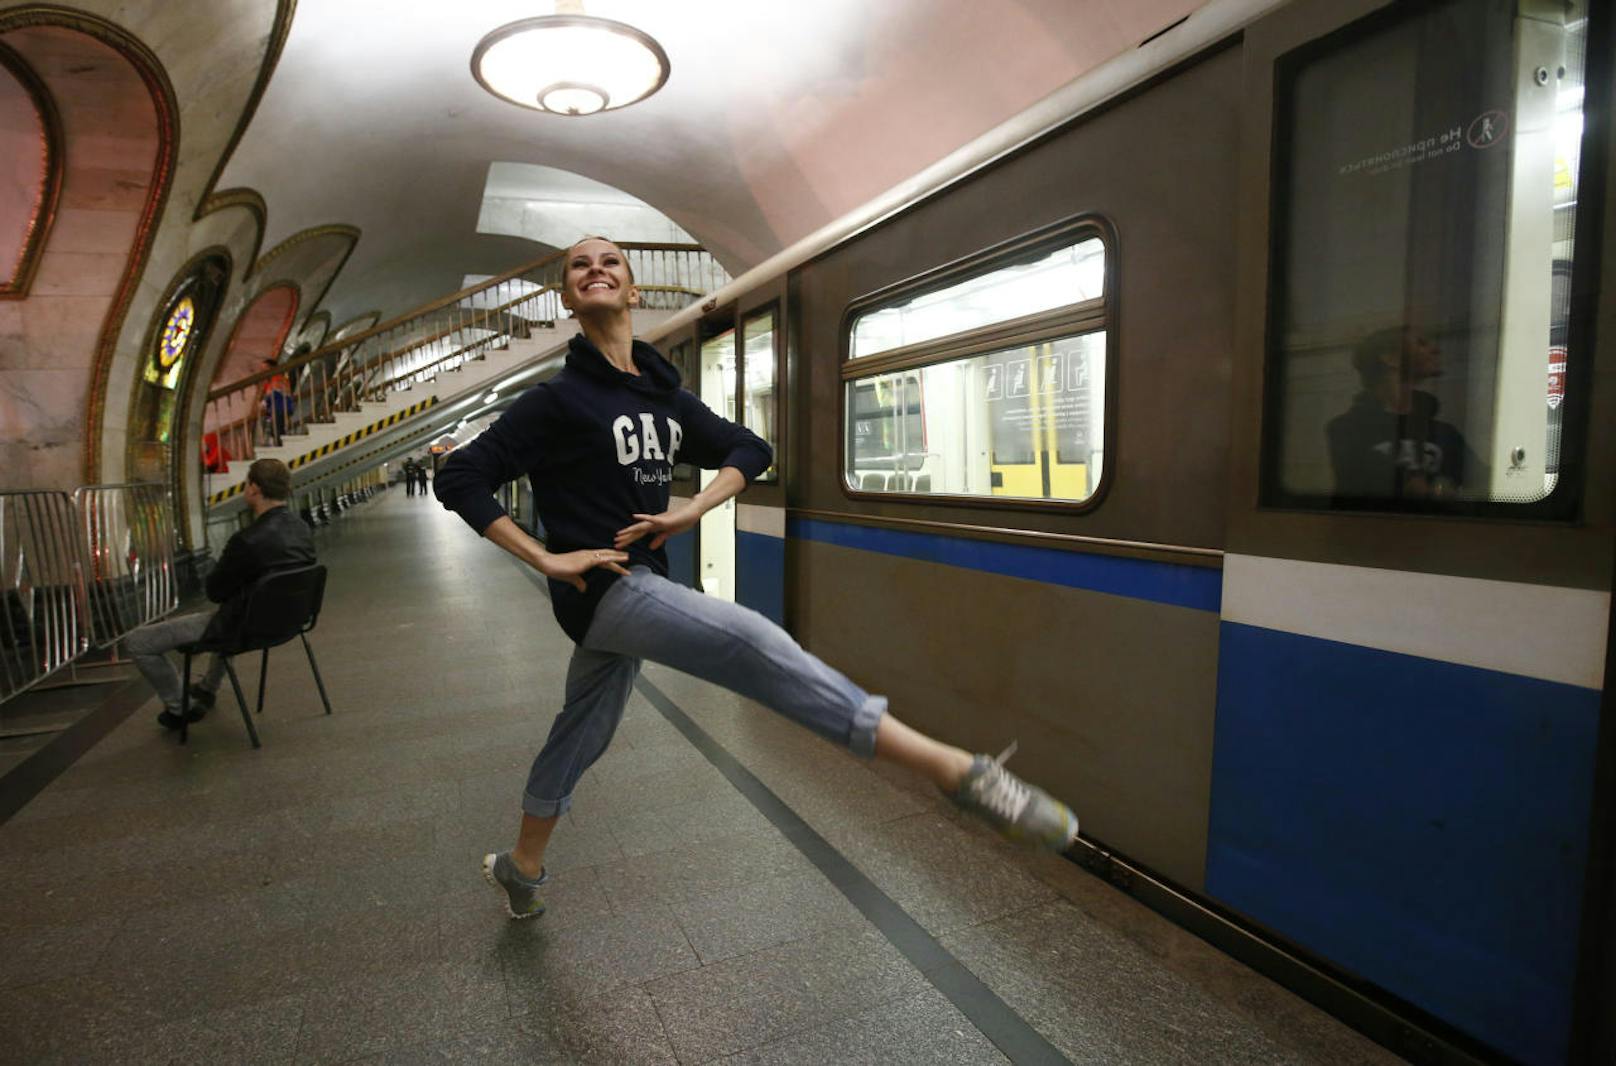 Kreml-Ballett tanzt Nacht in U-Bahn-Station Novoslobodskaya in Moskau durch
Fotocredit: Reuters/Sergei Karpukhin